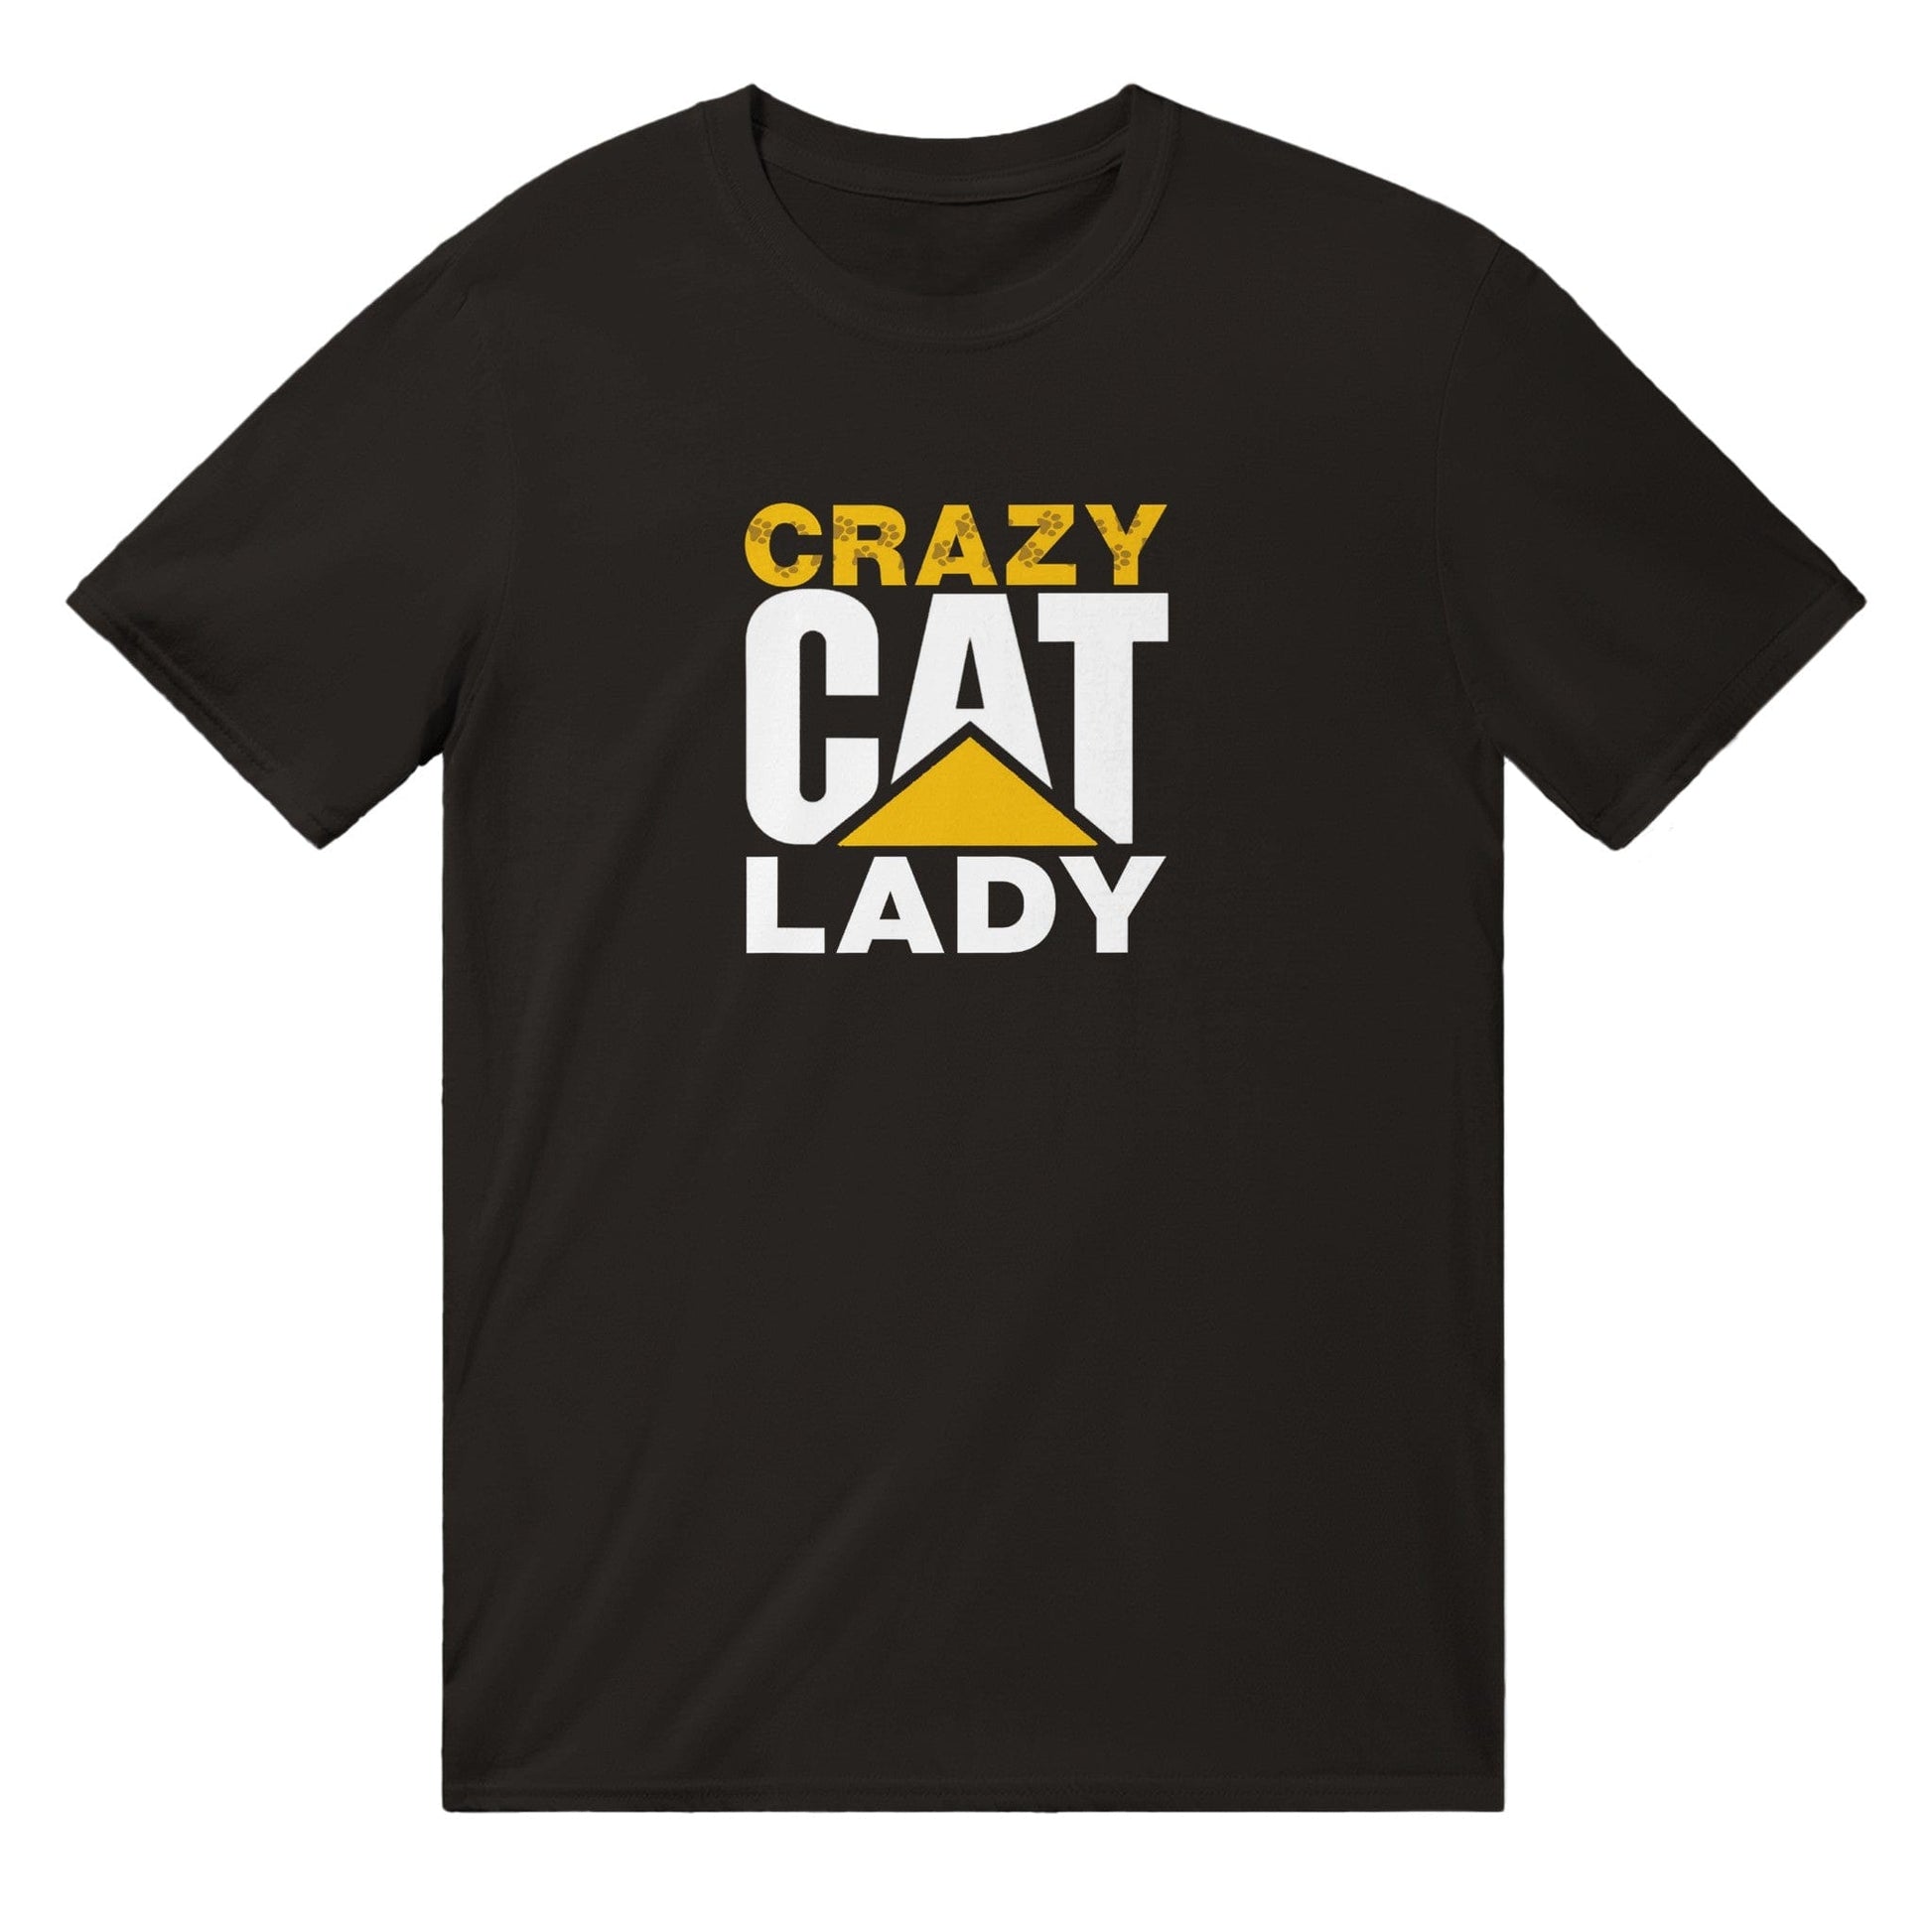 Crazy Cat Lady T-Shirt Australia Online Color Black / S